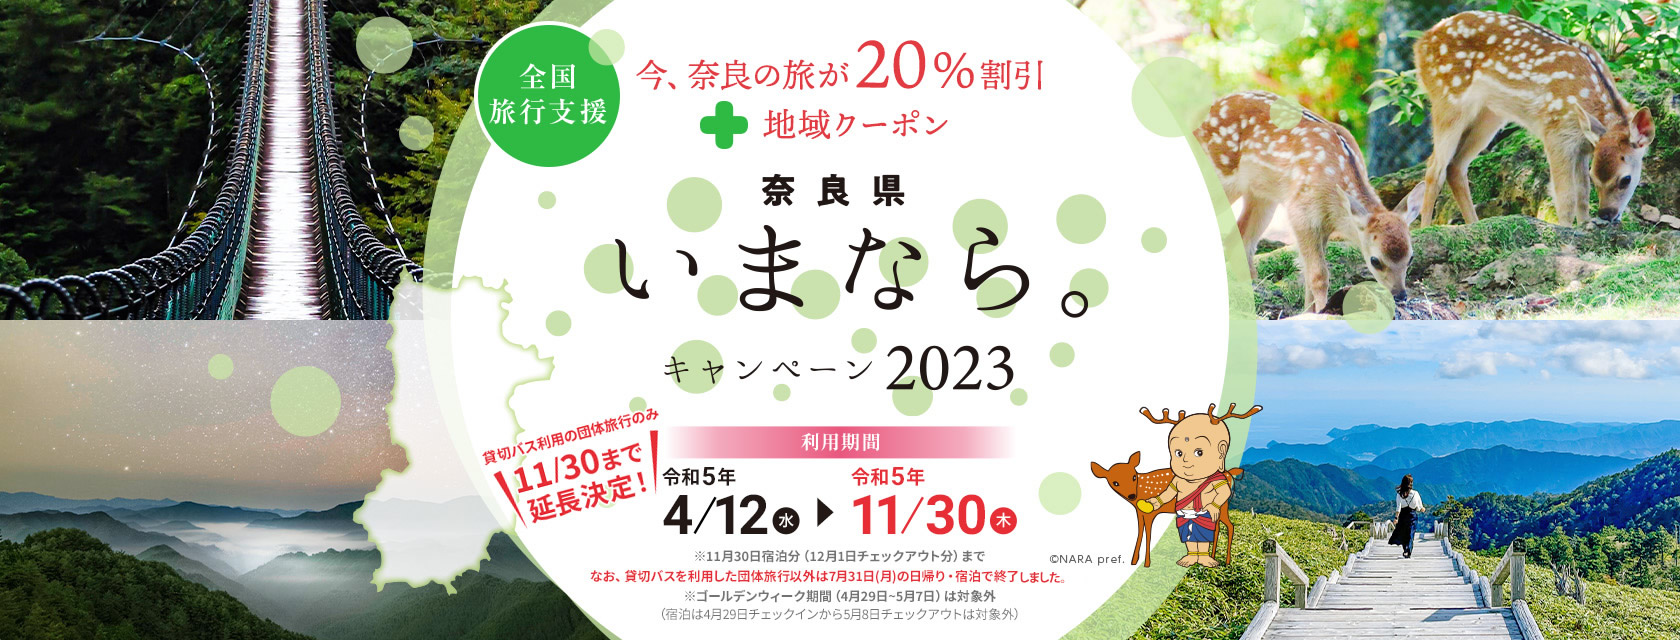 【奈良県】奈良県「いまなら。キャンペーン2023」